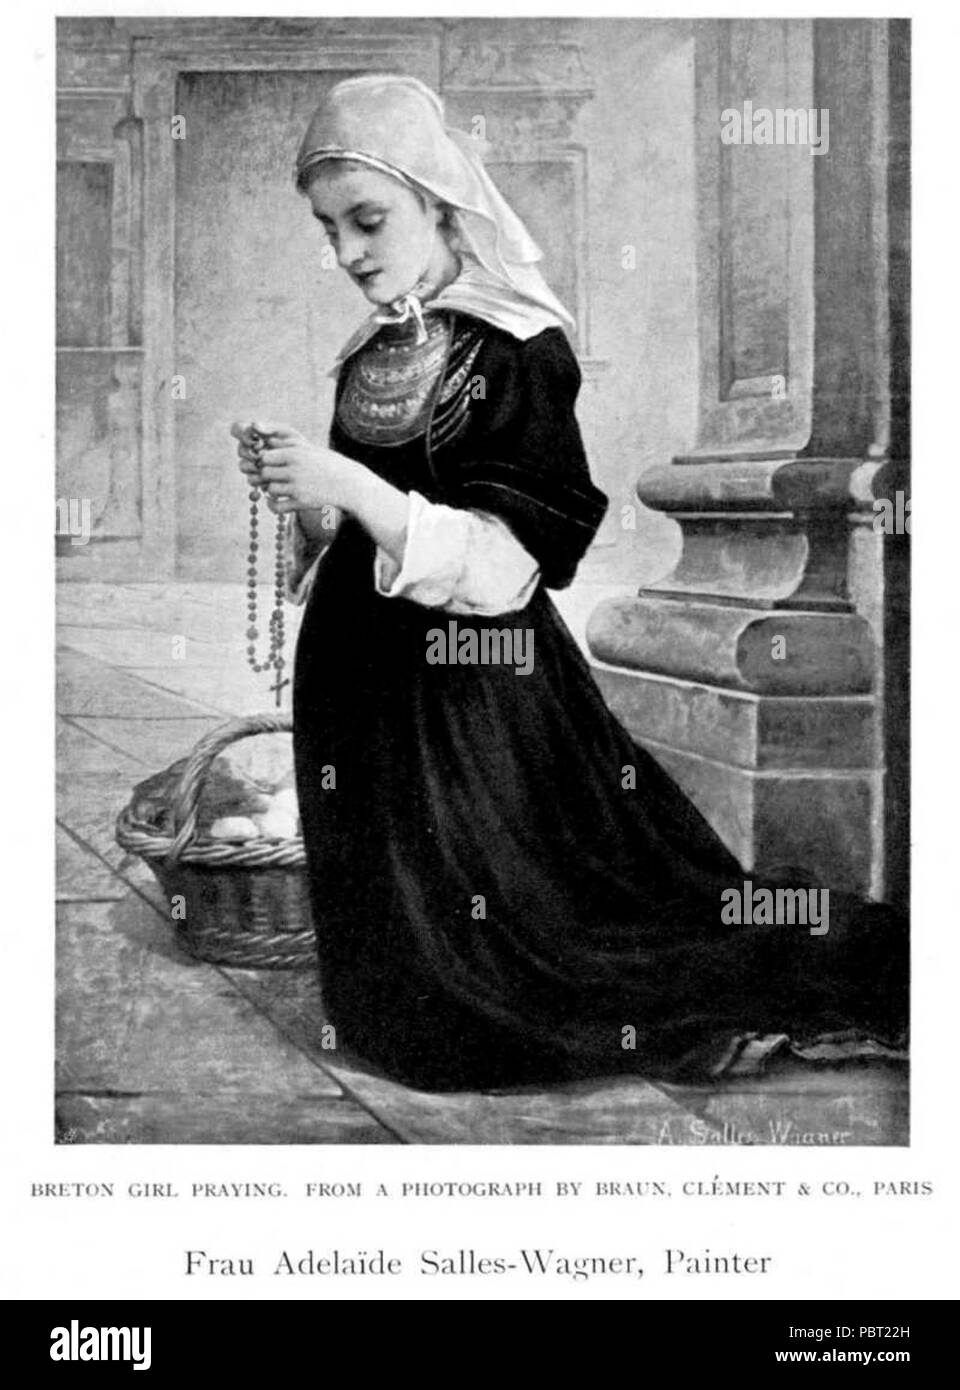 Adelaïde Salles-Wagner - Breton Girl Praying. Stock Photo